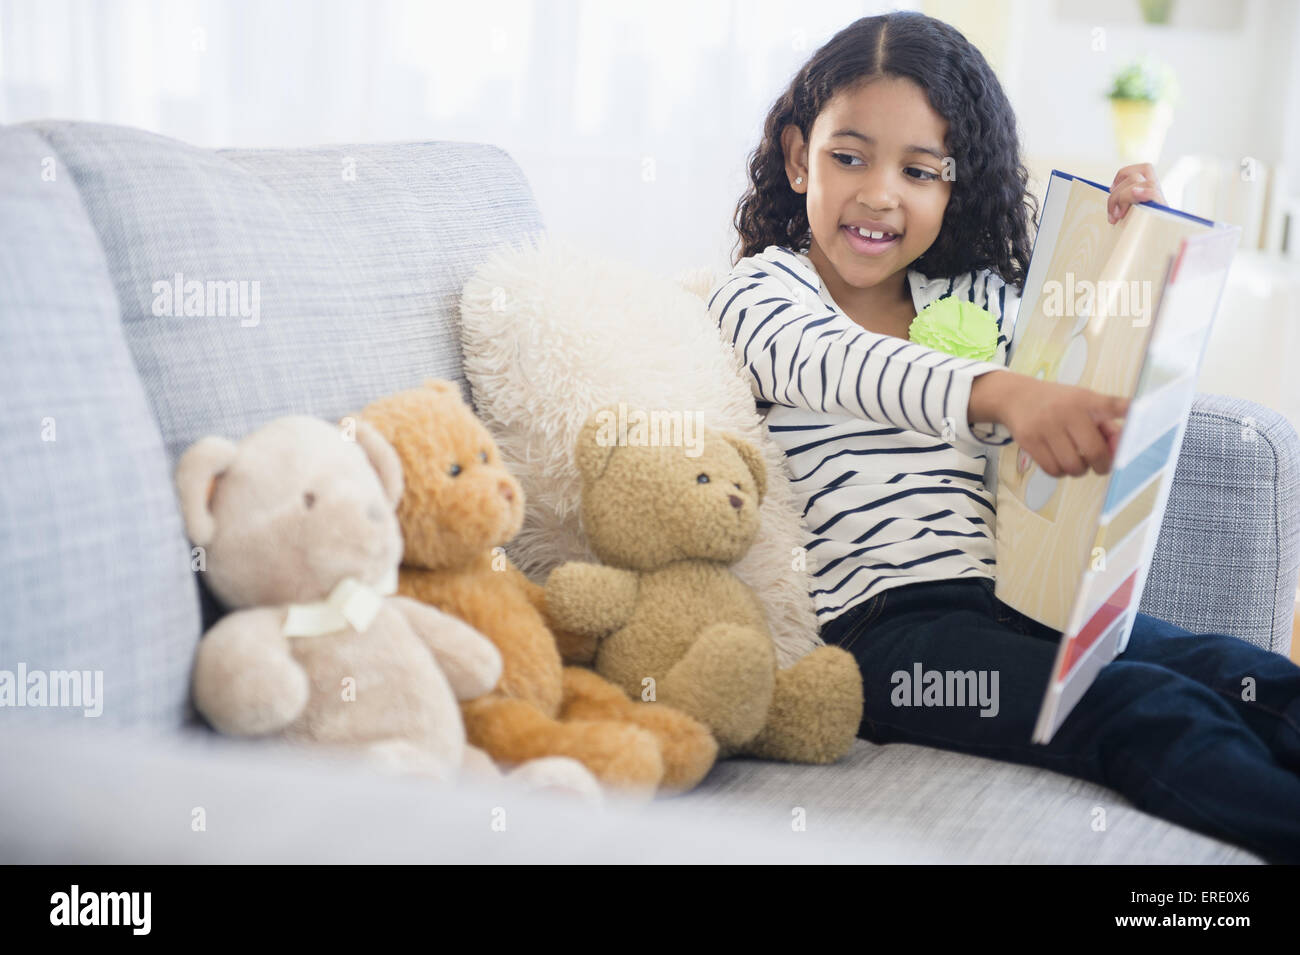 Raza mixta chica enseñando los osos de peluche en el sofá Foto de stock